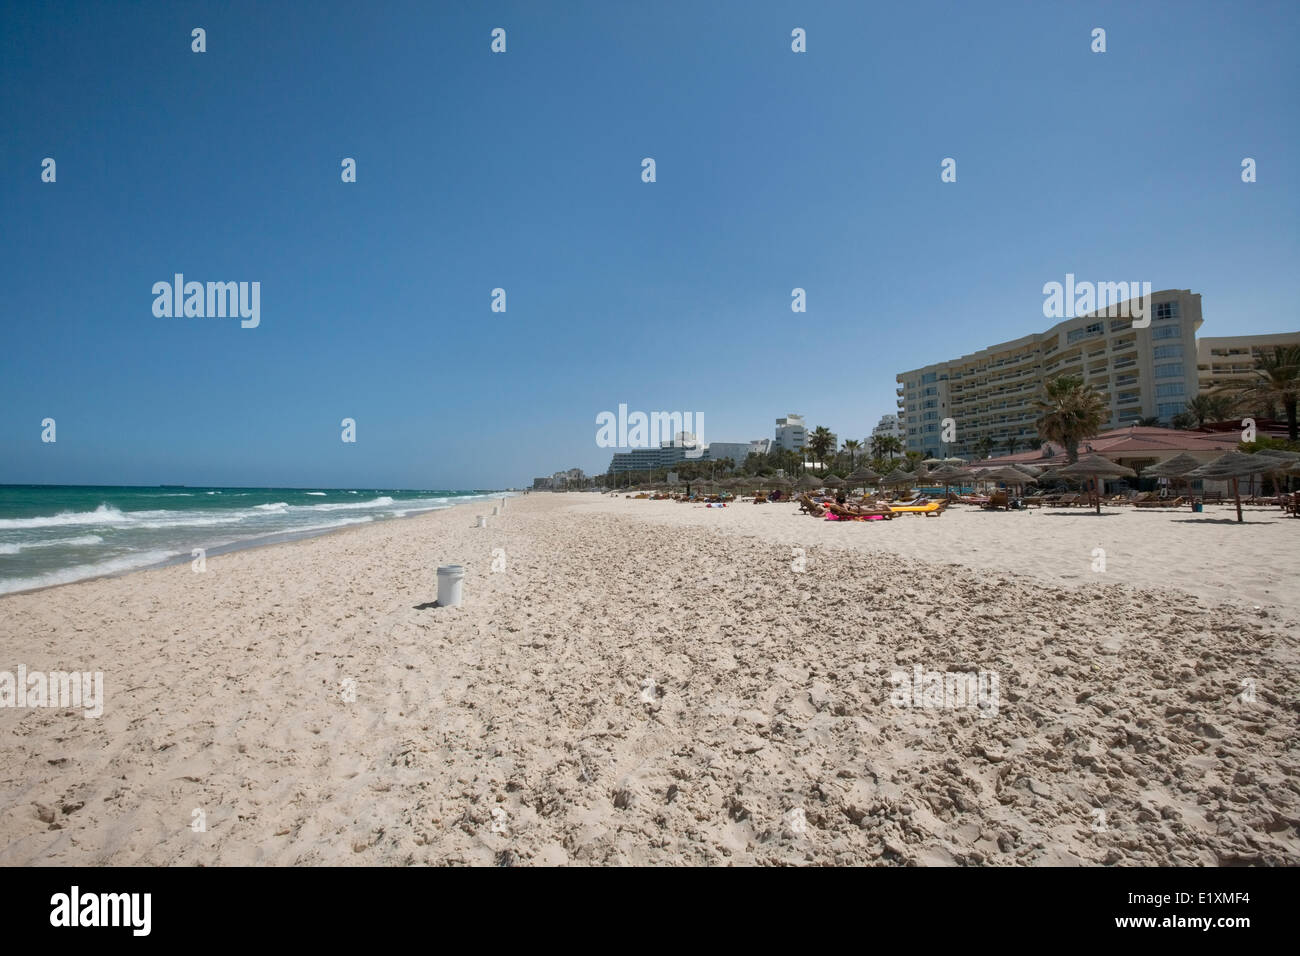 View of beach, Sousse, Tunisia Stock Photo